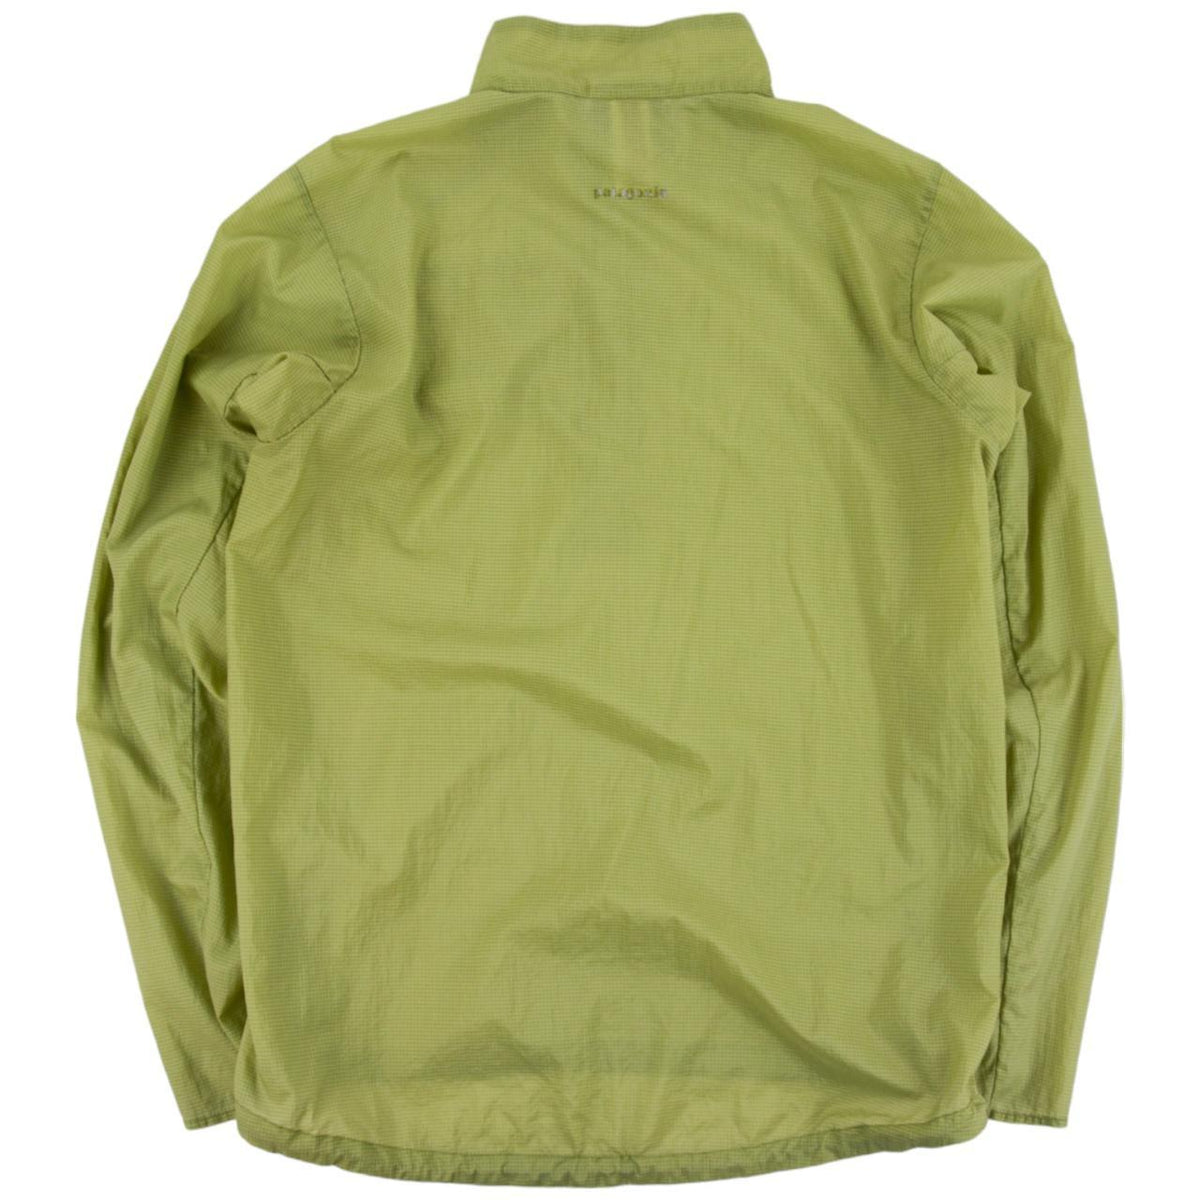 Vintage Patagonia Jacket Size M